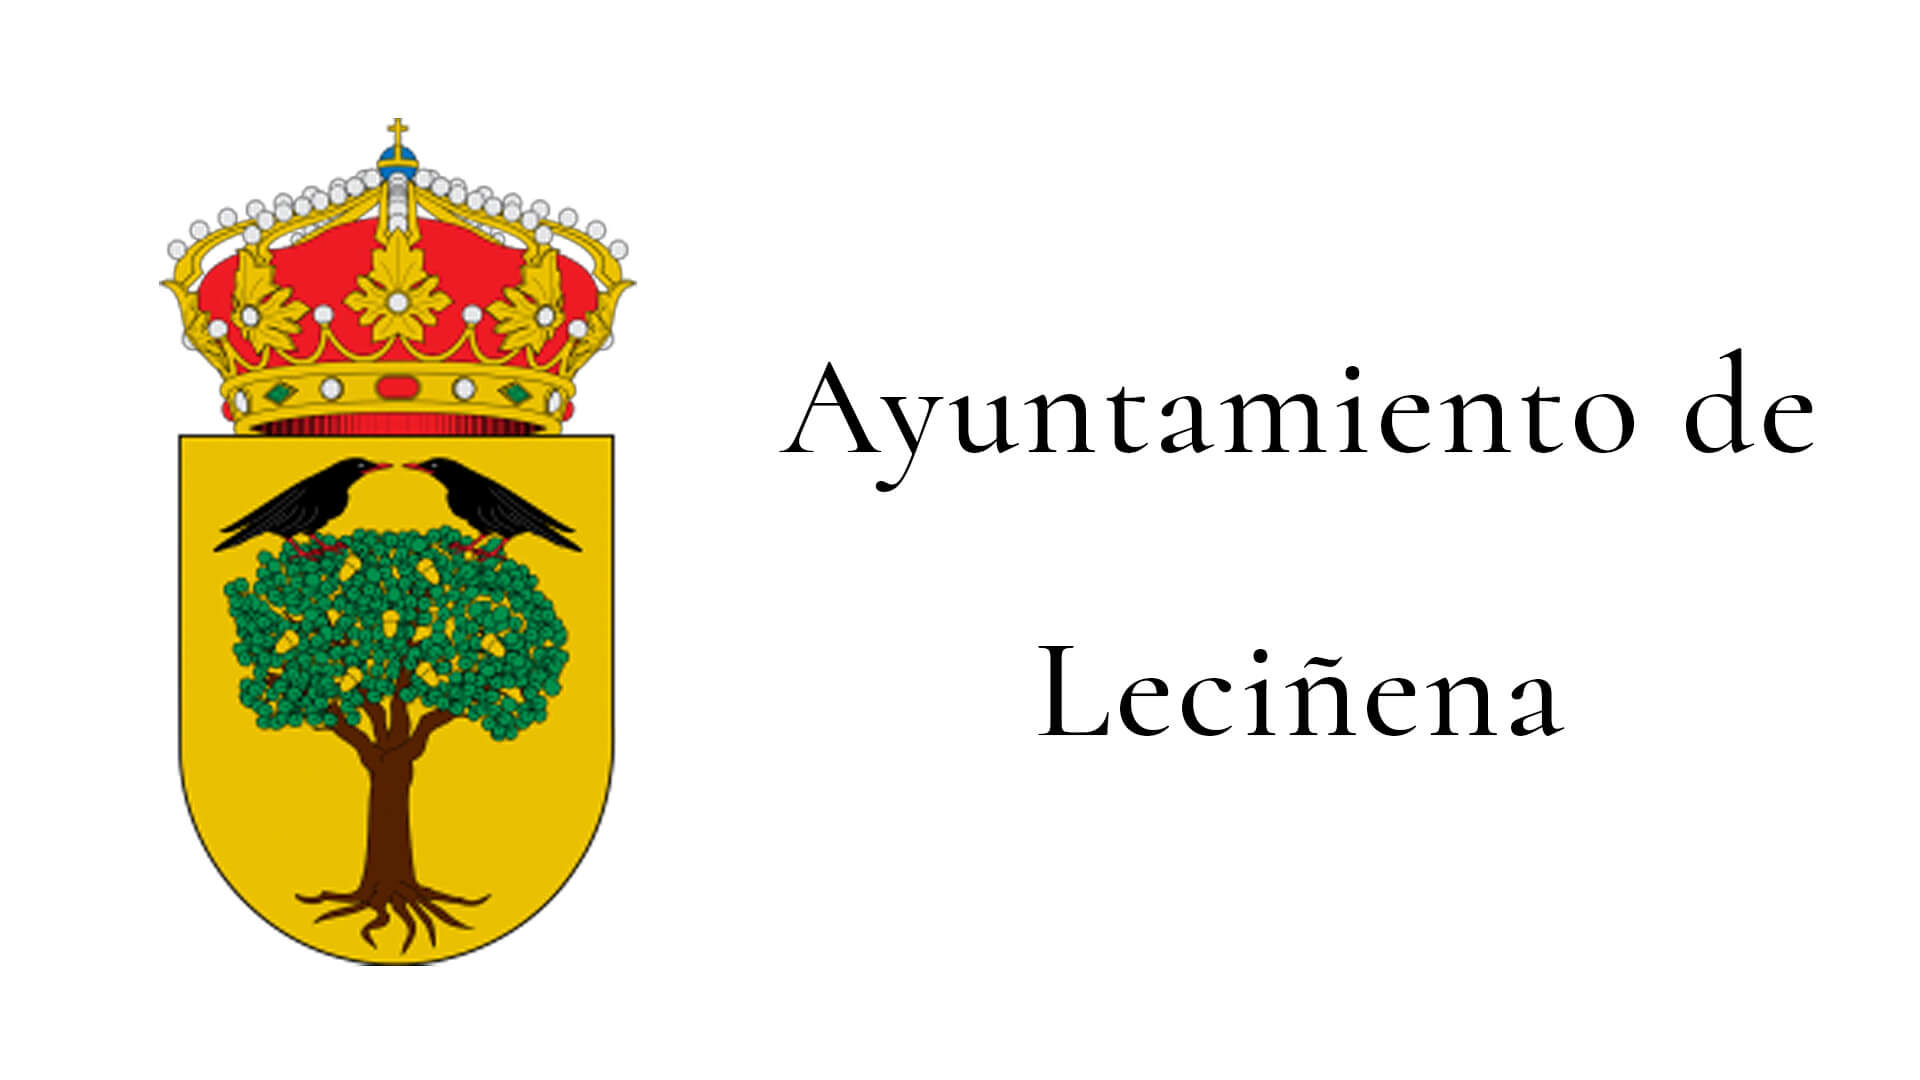 Ayuntamiento de Leciñena - Clientes de ESMAS Gestión Deportiva